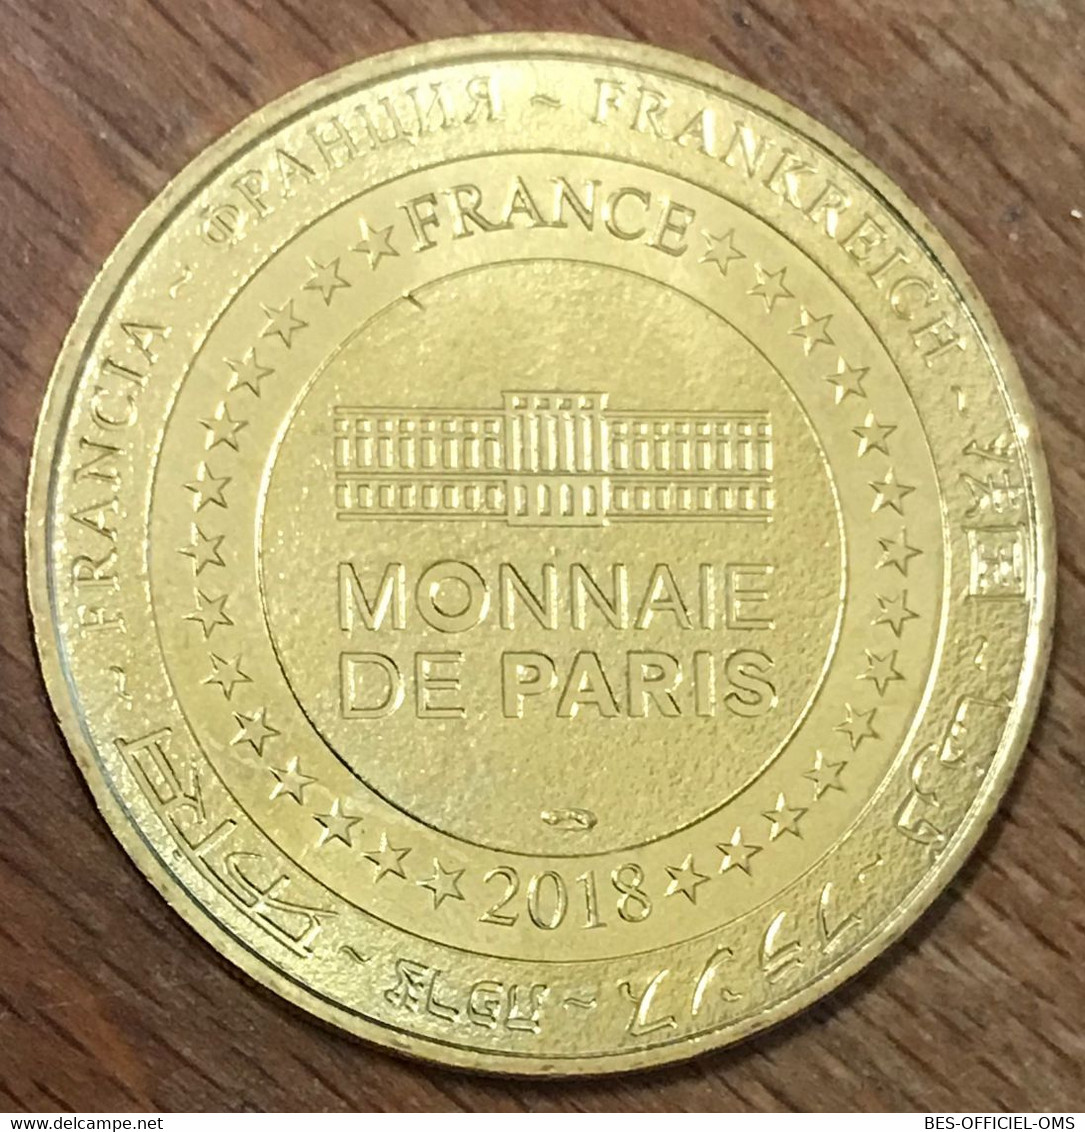 63 VULCANIA VOLCAN EN COUPE MDP 2018 MÉDAILLE SOUVENIR MONNAIE DE PARIS JETON TOURISTIQUE MEDALS COINS TOKENS - 2018